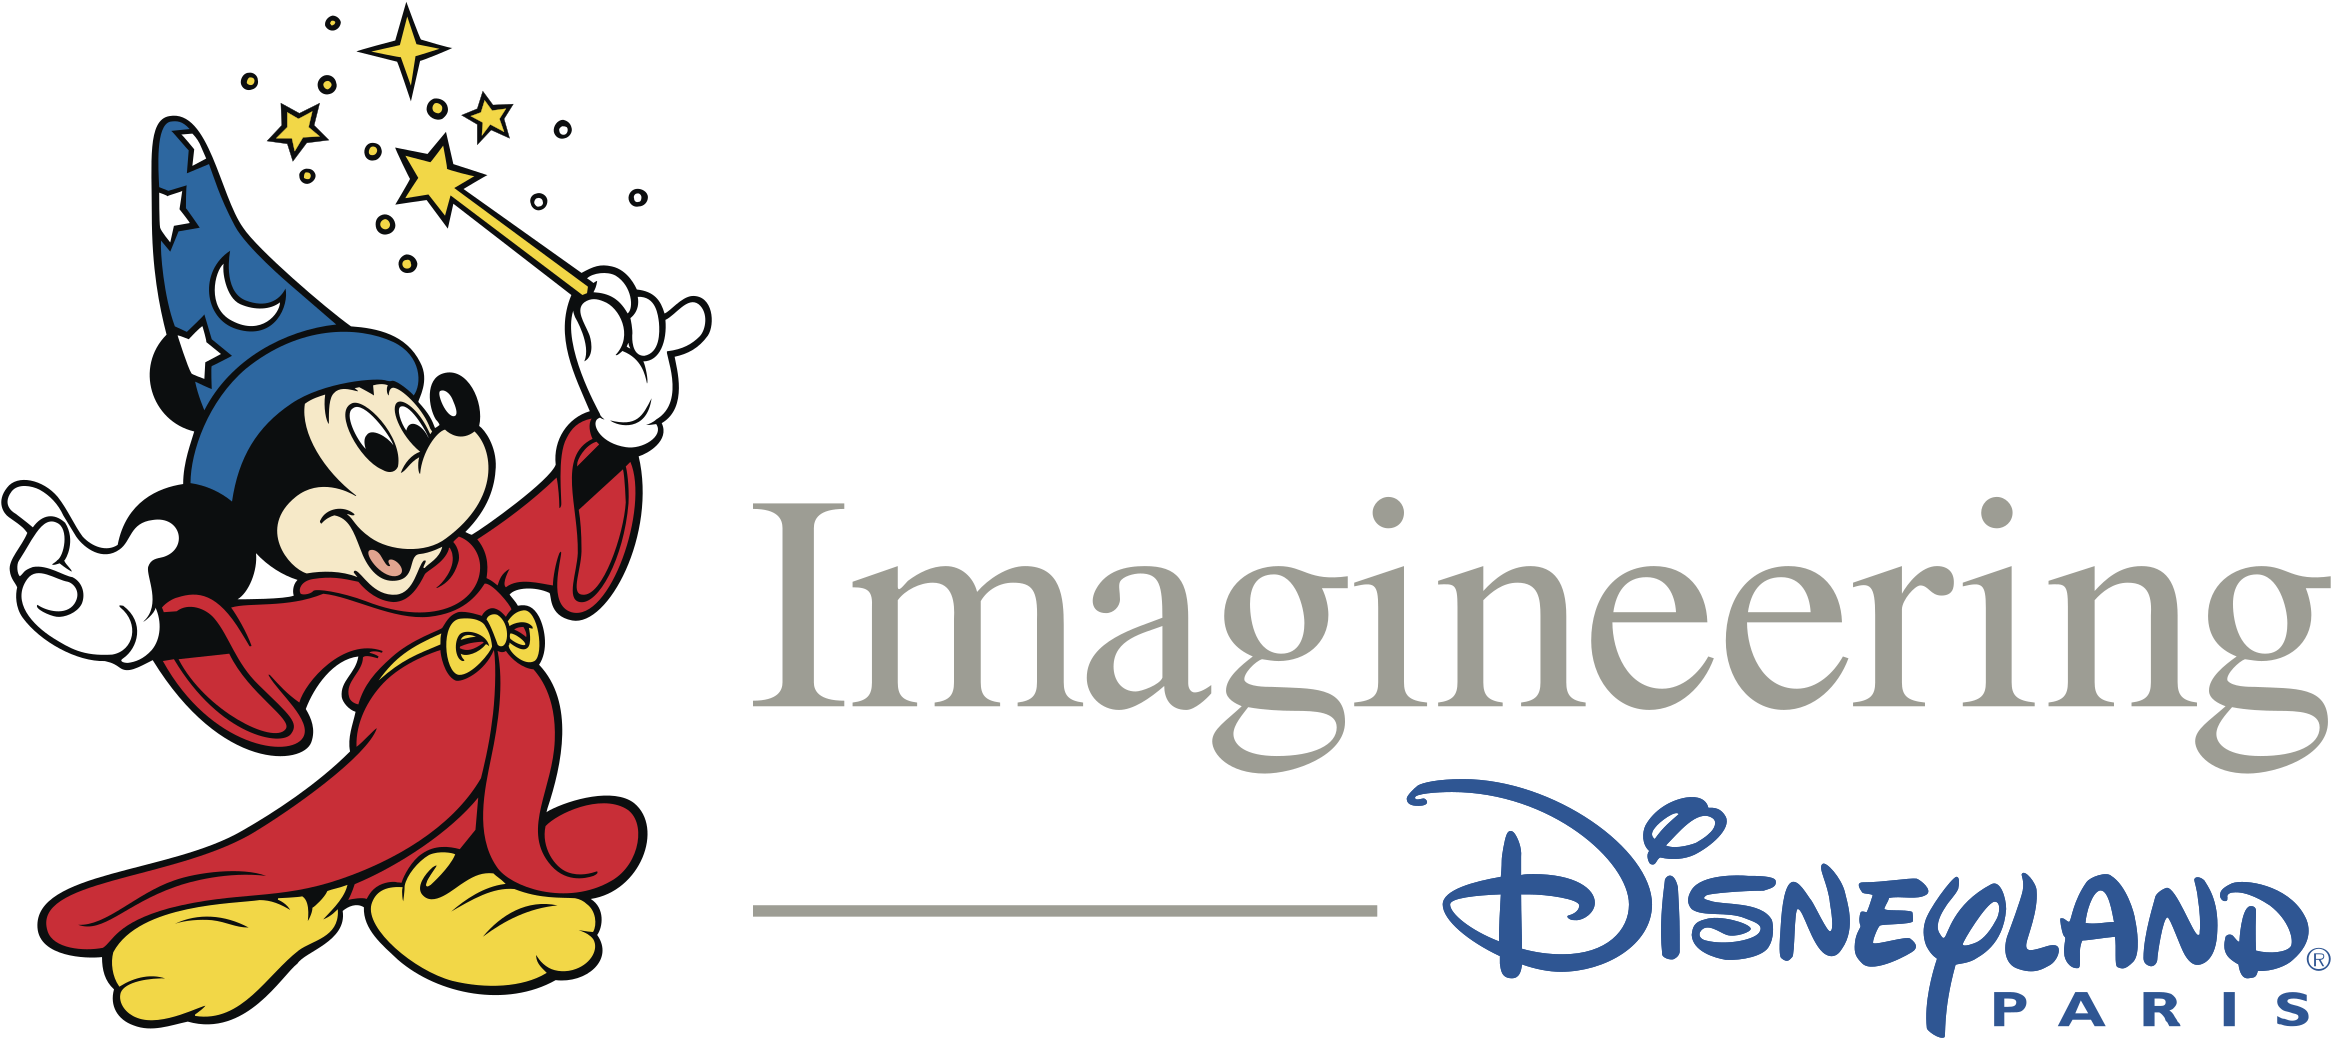 Imagineering Disneyland Paris Logo Png Transparent - Disney Imagineering Logo Png (2400x2400), Png Download